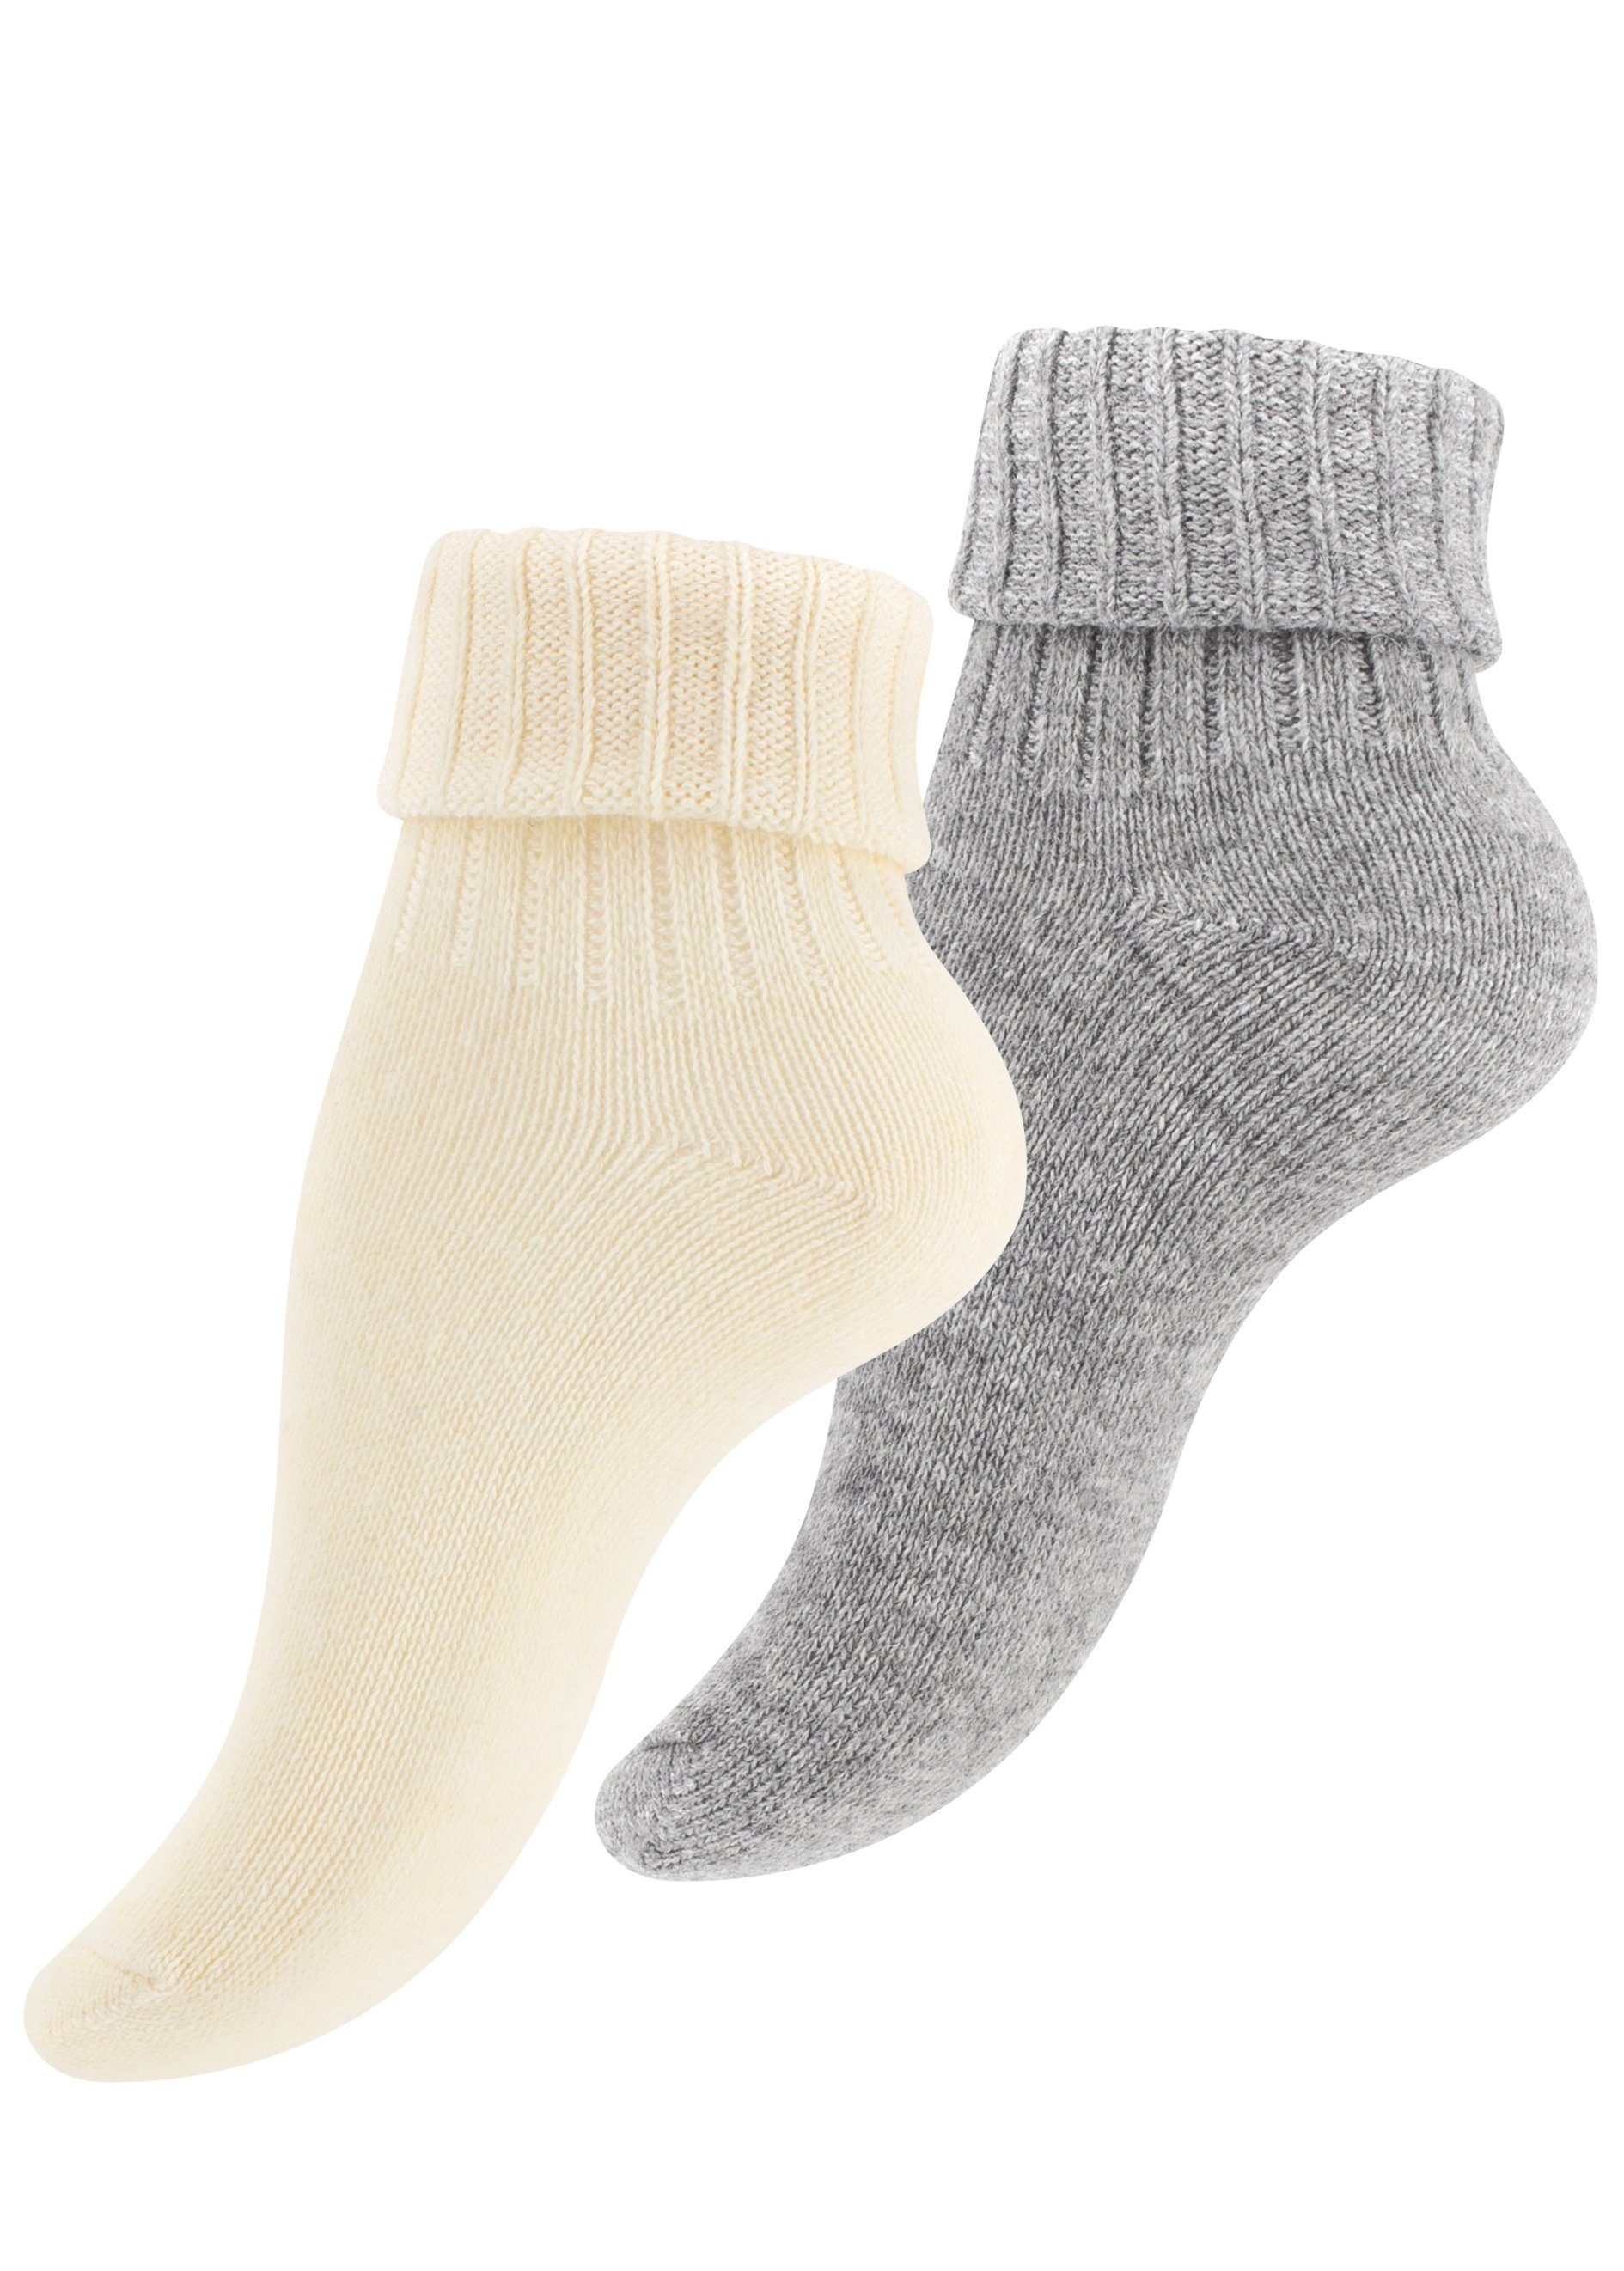 Cotton Prime® Socken Alpaka Socken mit Umschlag (2-Paar) ökologisch gefärbt und vorgewaschen ecru/hellgrau